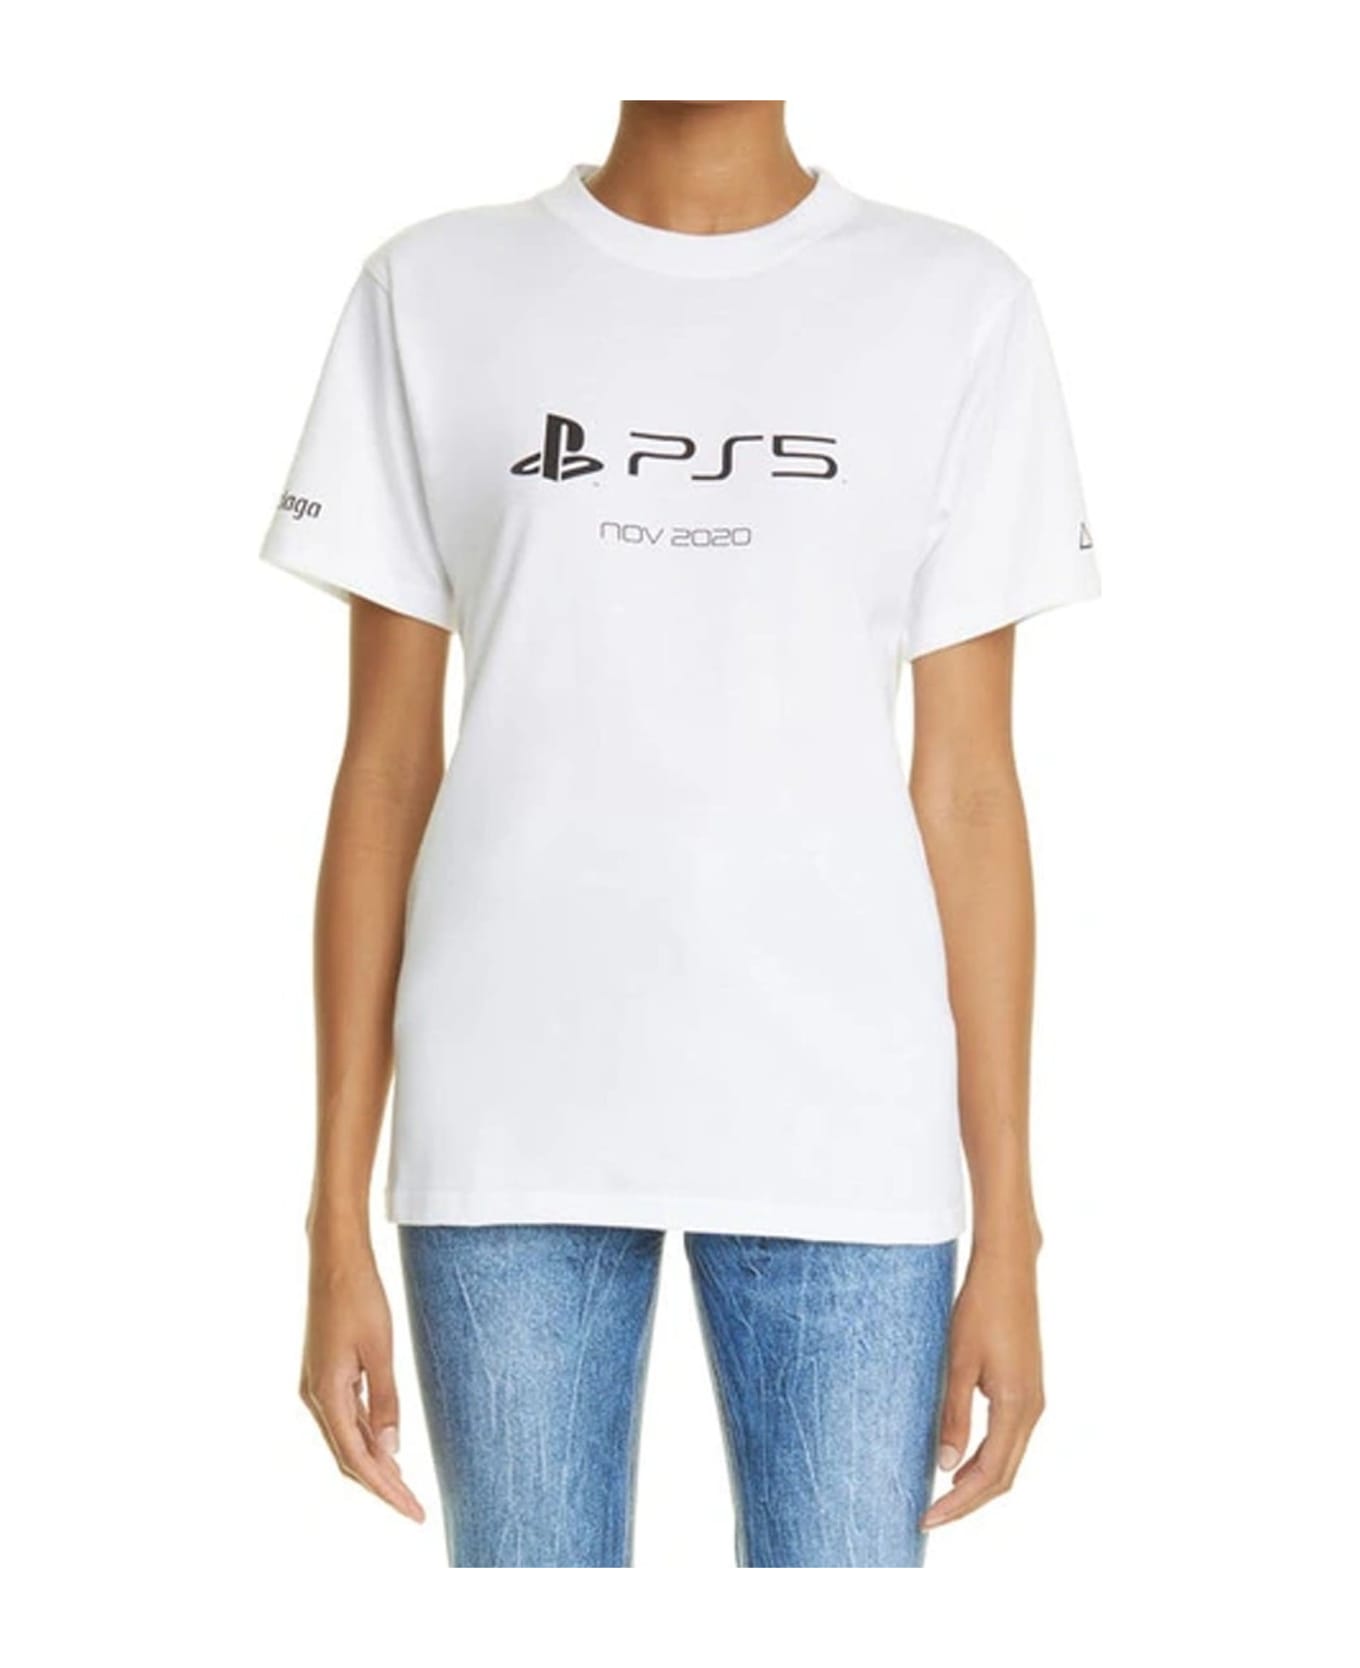 Balenciaga X Playstation Ps5 T-shirt - White